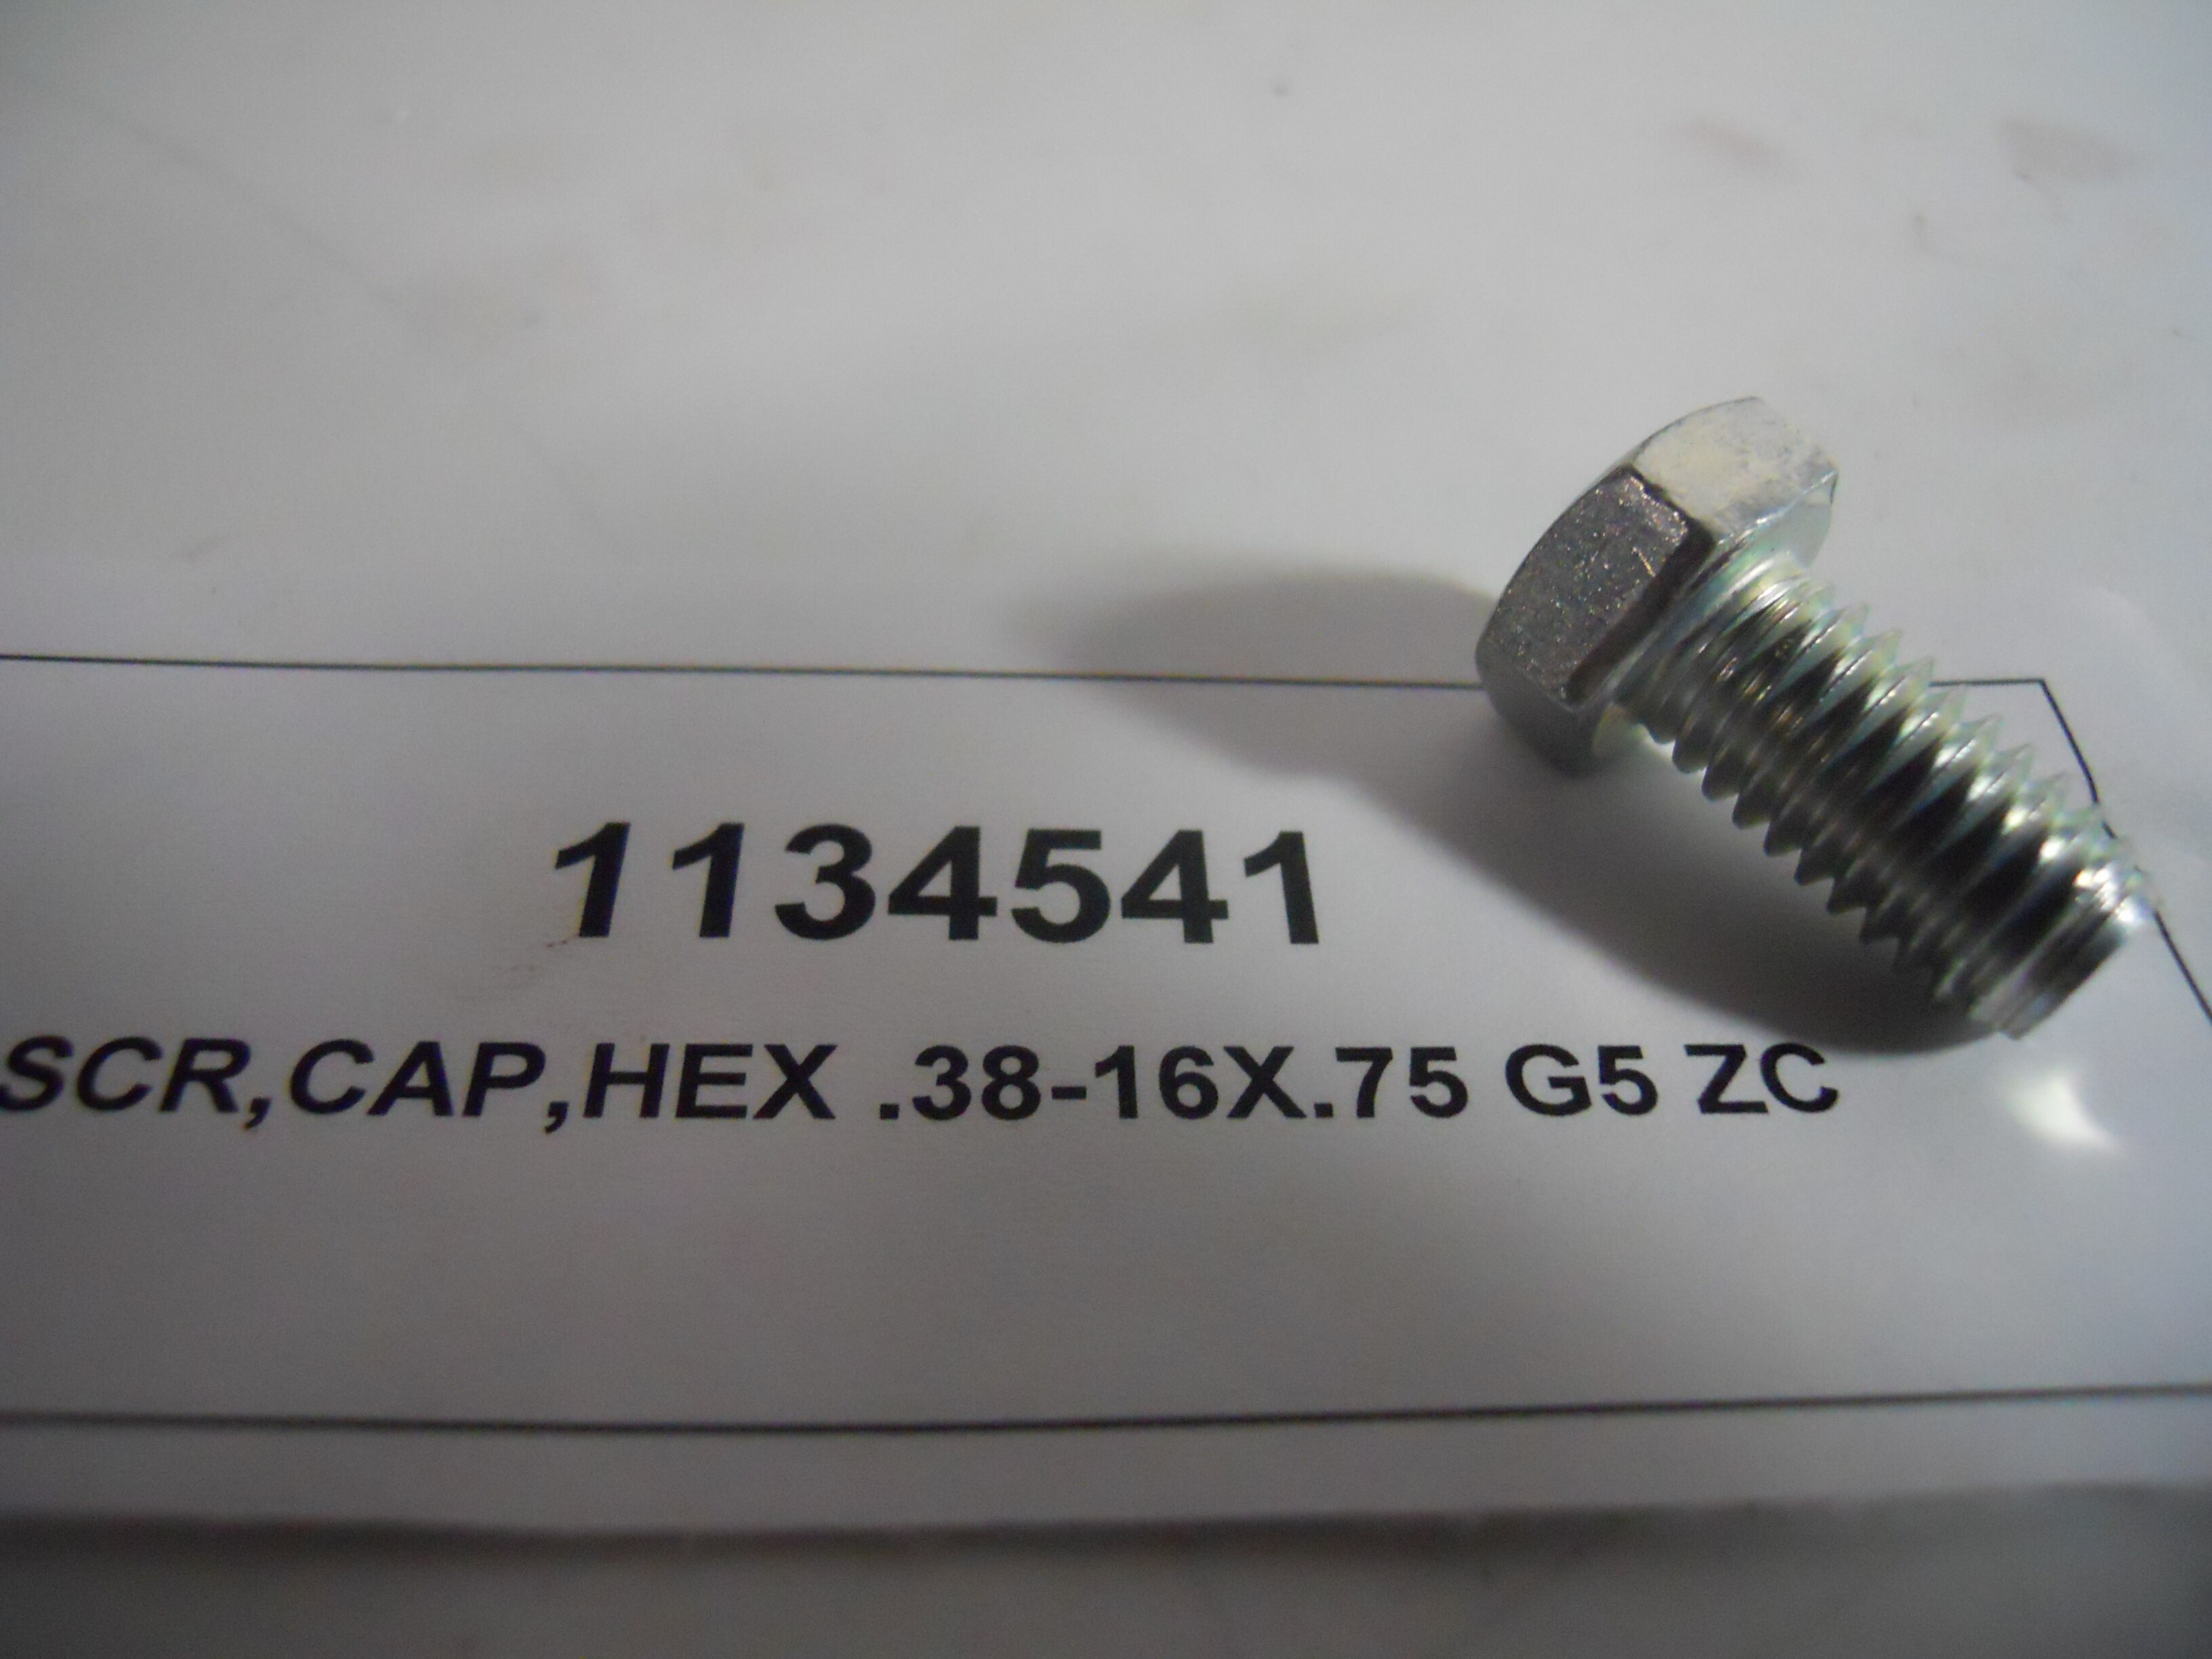 SCR,CAP,HEX .38-16X.75 G5 ZC